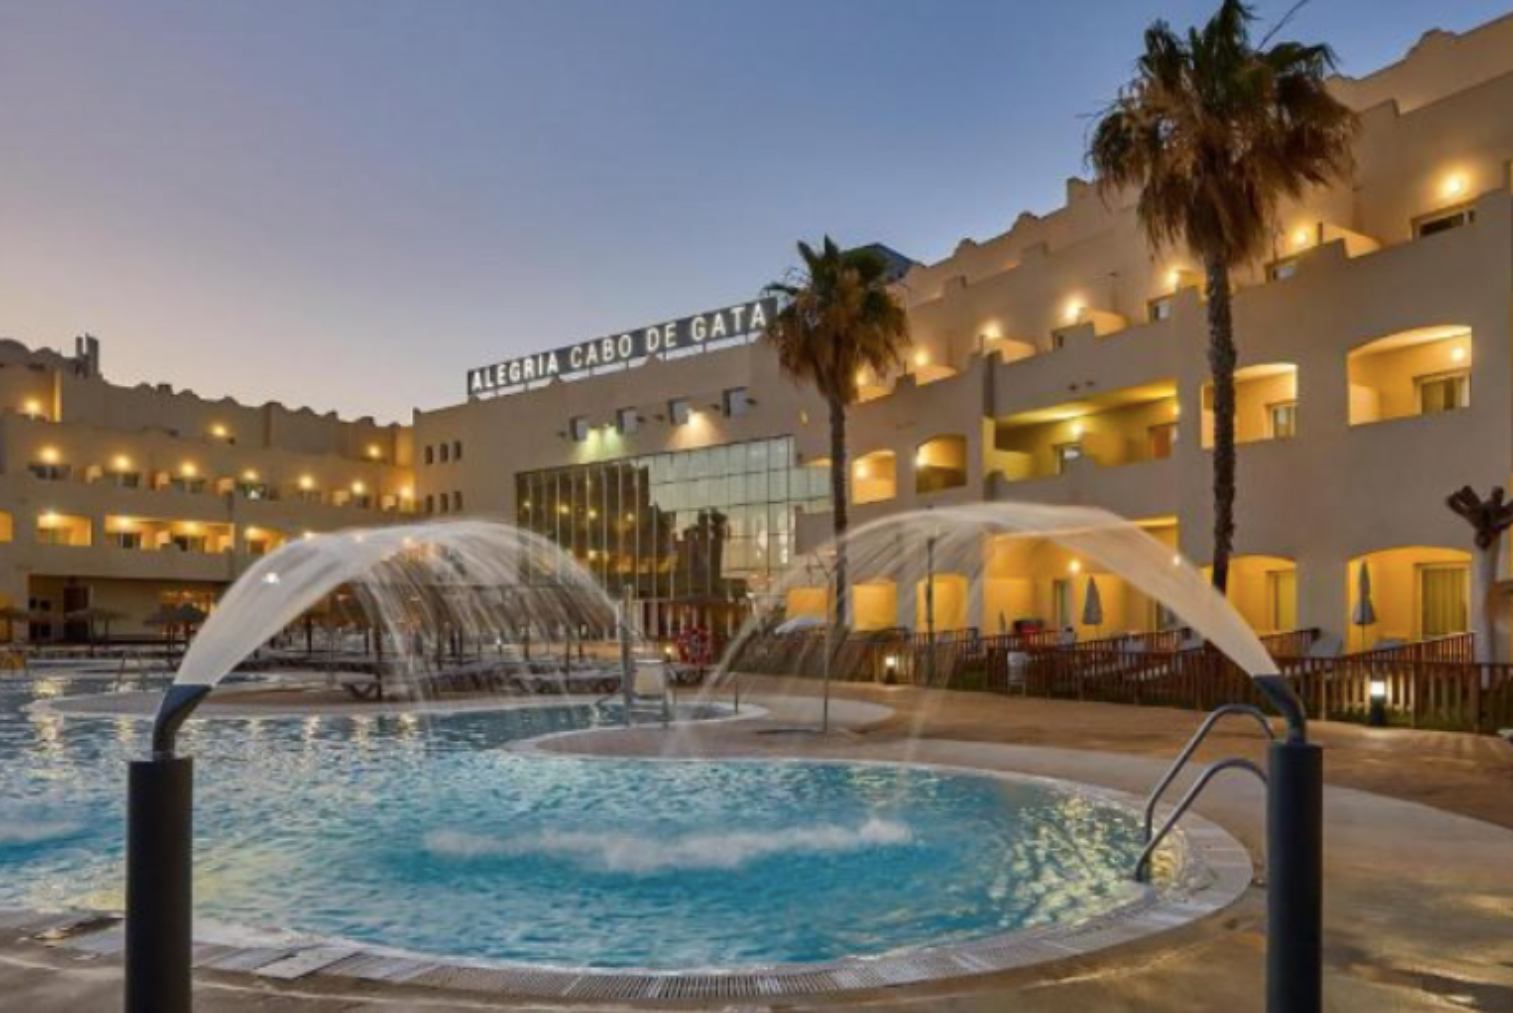 El Gobierno aloja a 321 inmigrantes en el Hotel Alegría Cabo de Gata (Almería).